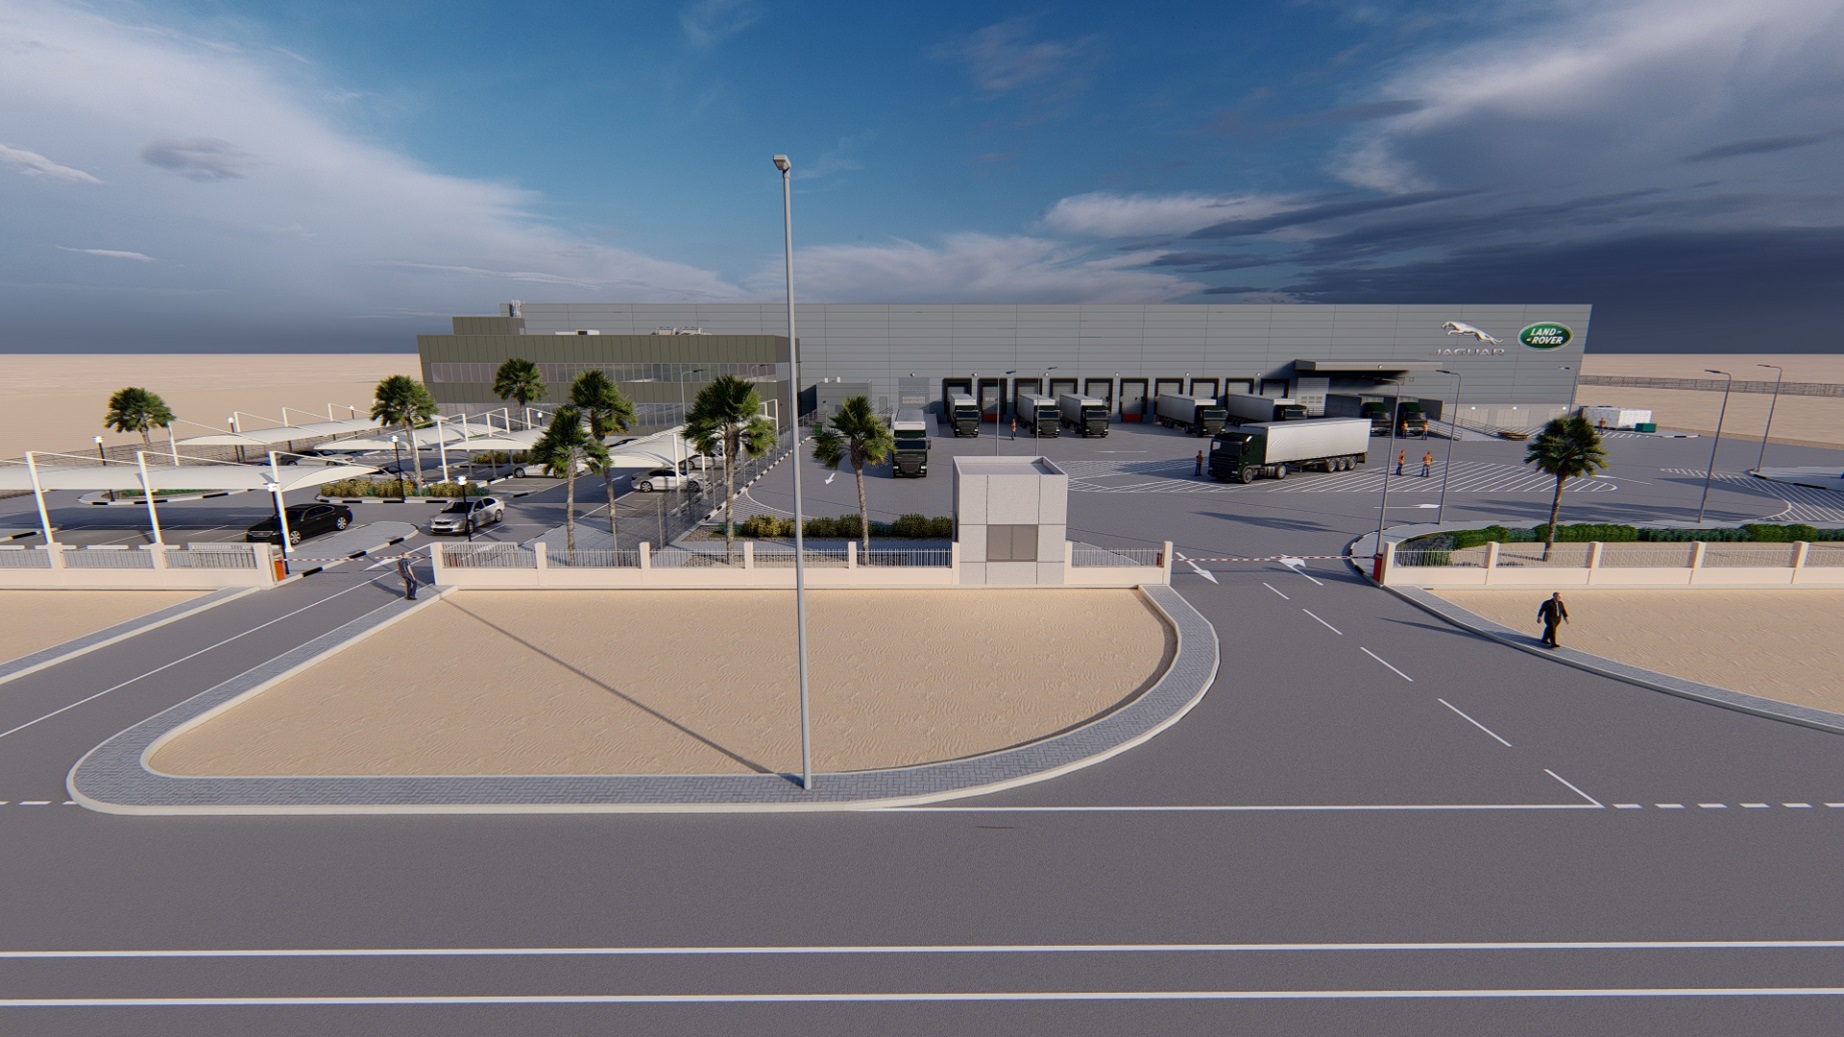 "جاكوار لاند روڤر" تنشئ مركزاً جديداً لتوزيع قطع السيارات بمساحة 19,000 متر مربع في منطقة جبل علي في دبي